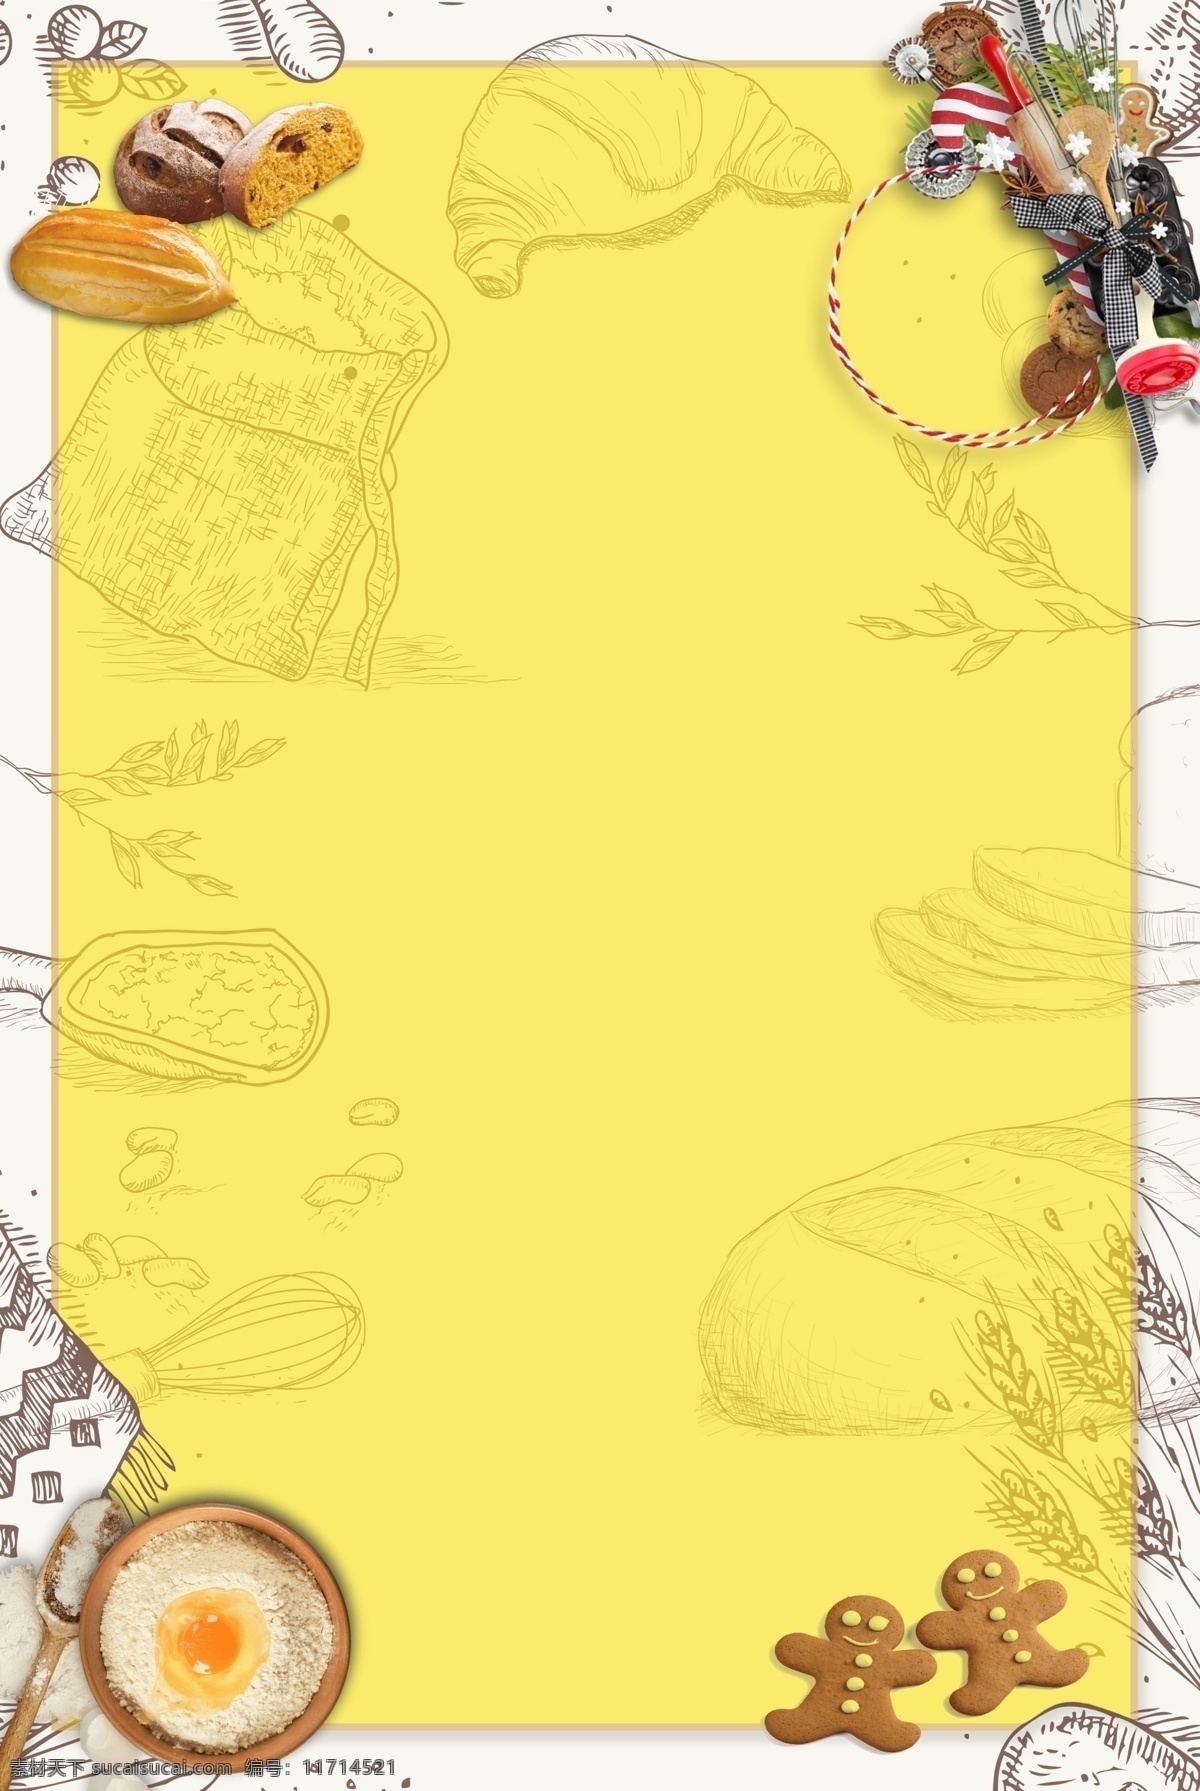 美食 烘焙 工具 饼干 蛋糕 广告 平面设计 烘焙工具 饼干蛋糕 卡通手绘 黄色 吃货节 海报